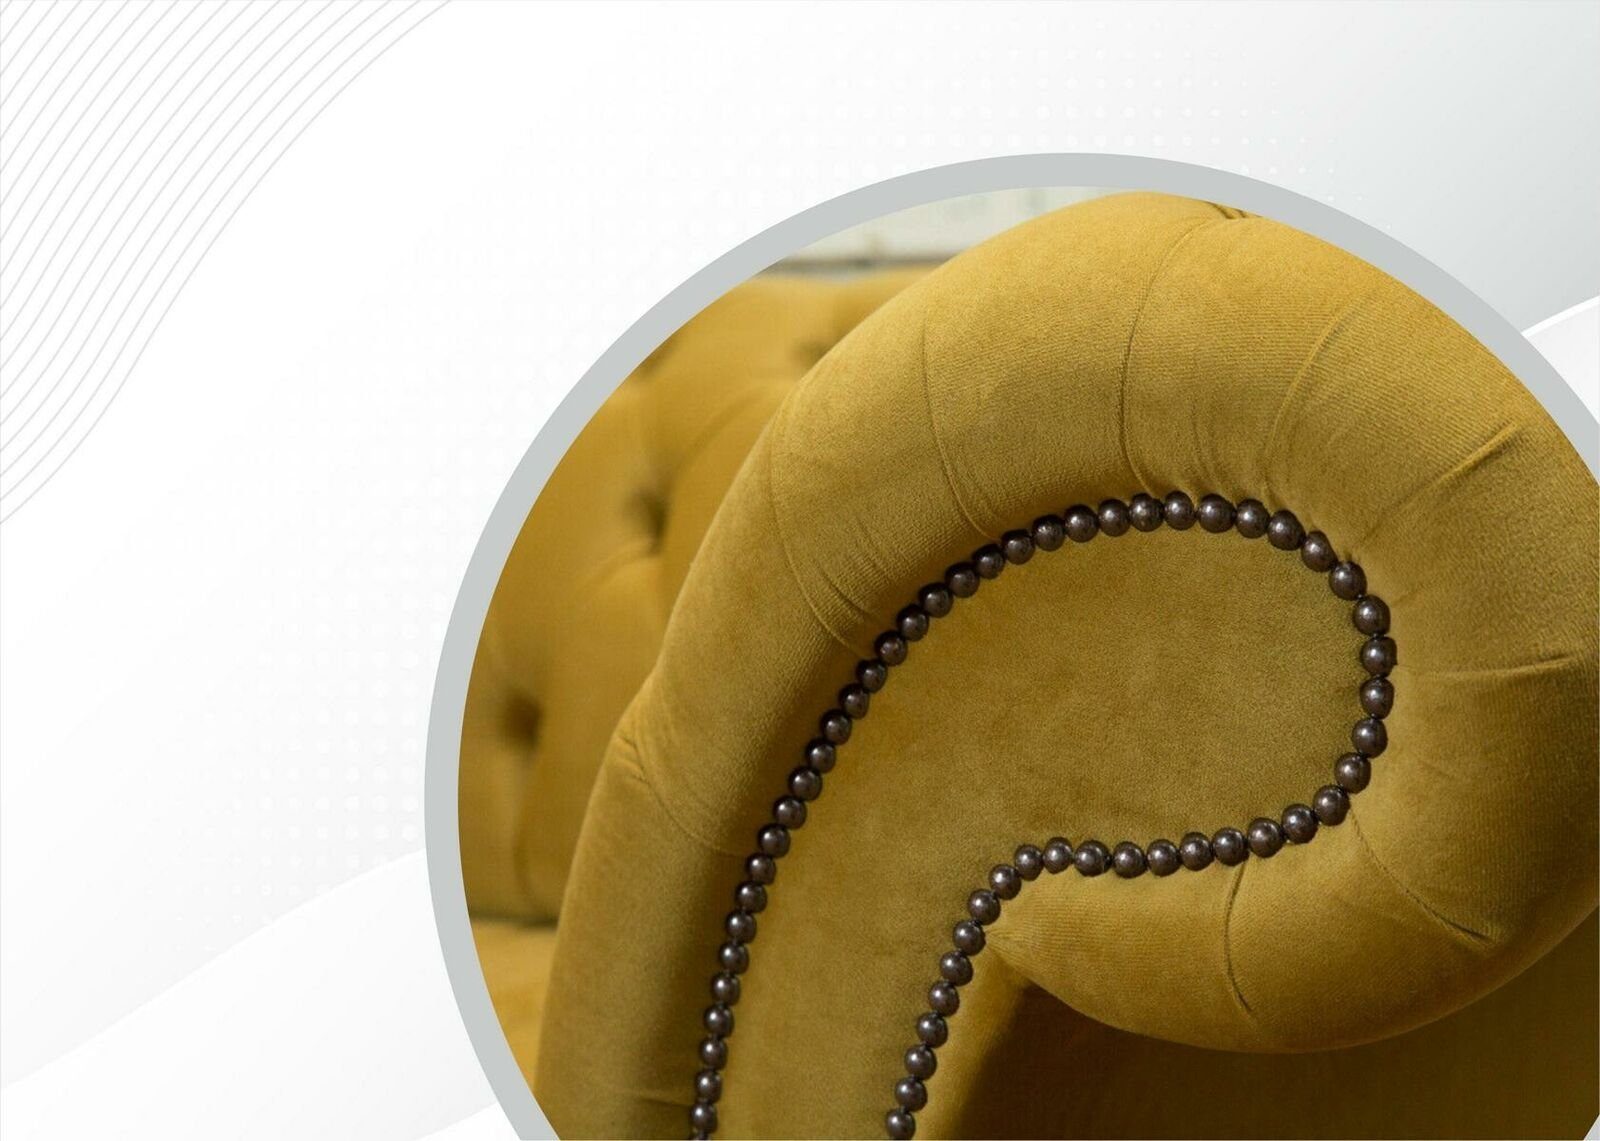 JVmoebel Polster Luxus Couch Chesterfield Garnitur Design Textil Chesterfield-Sofa, Sofa Sitz